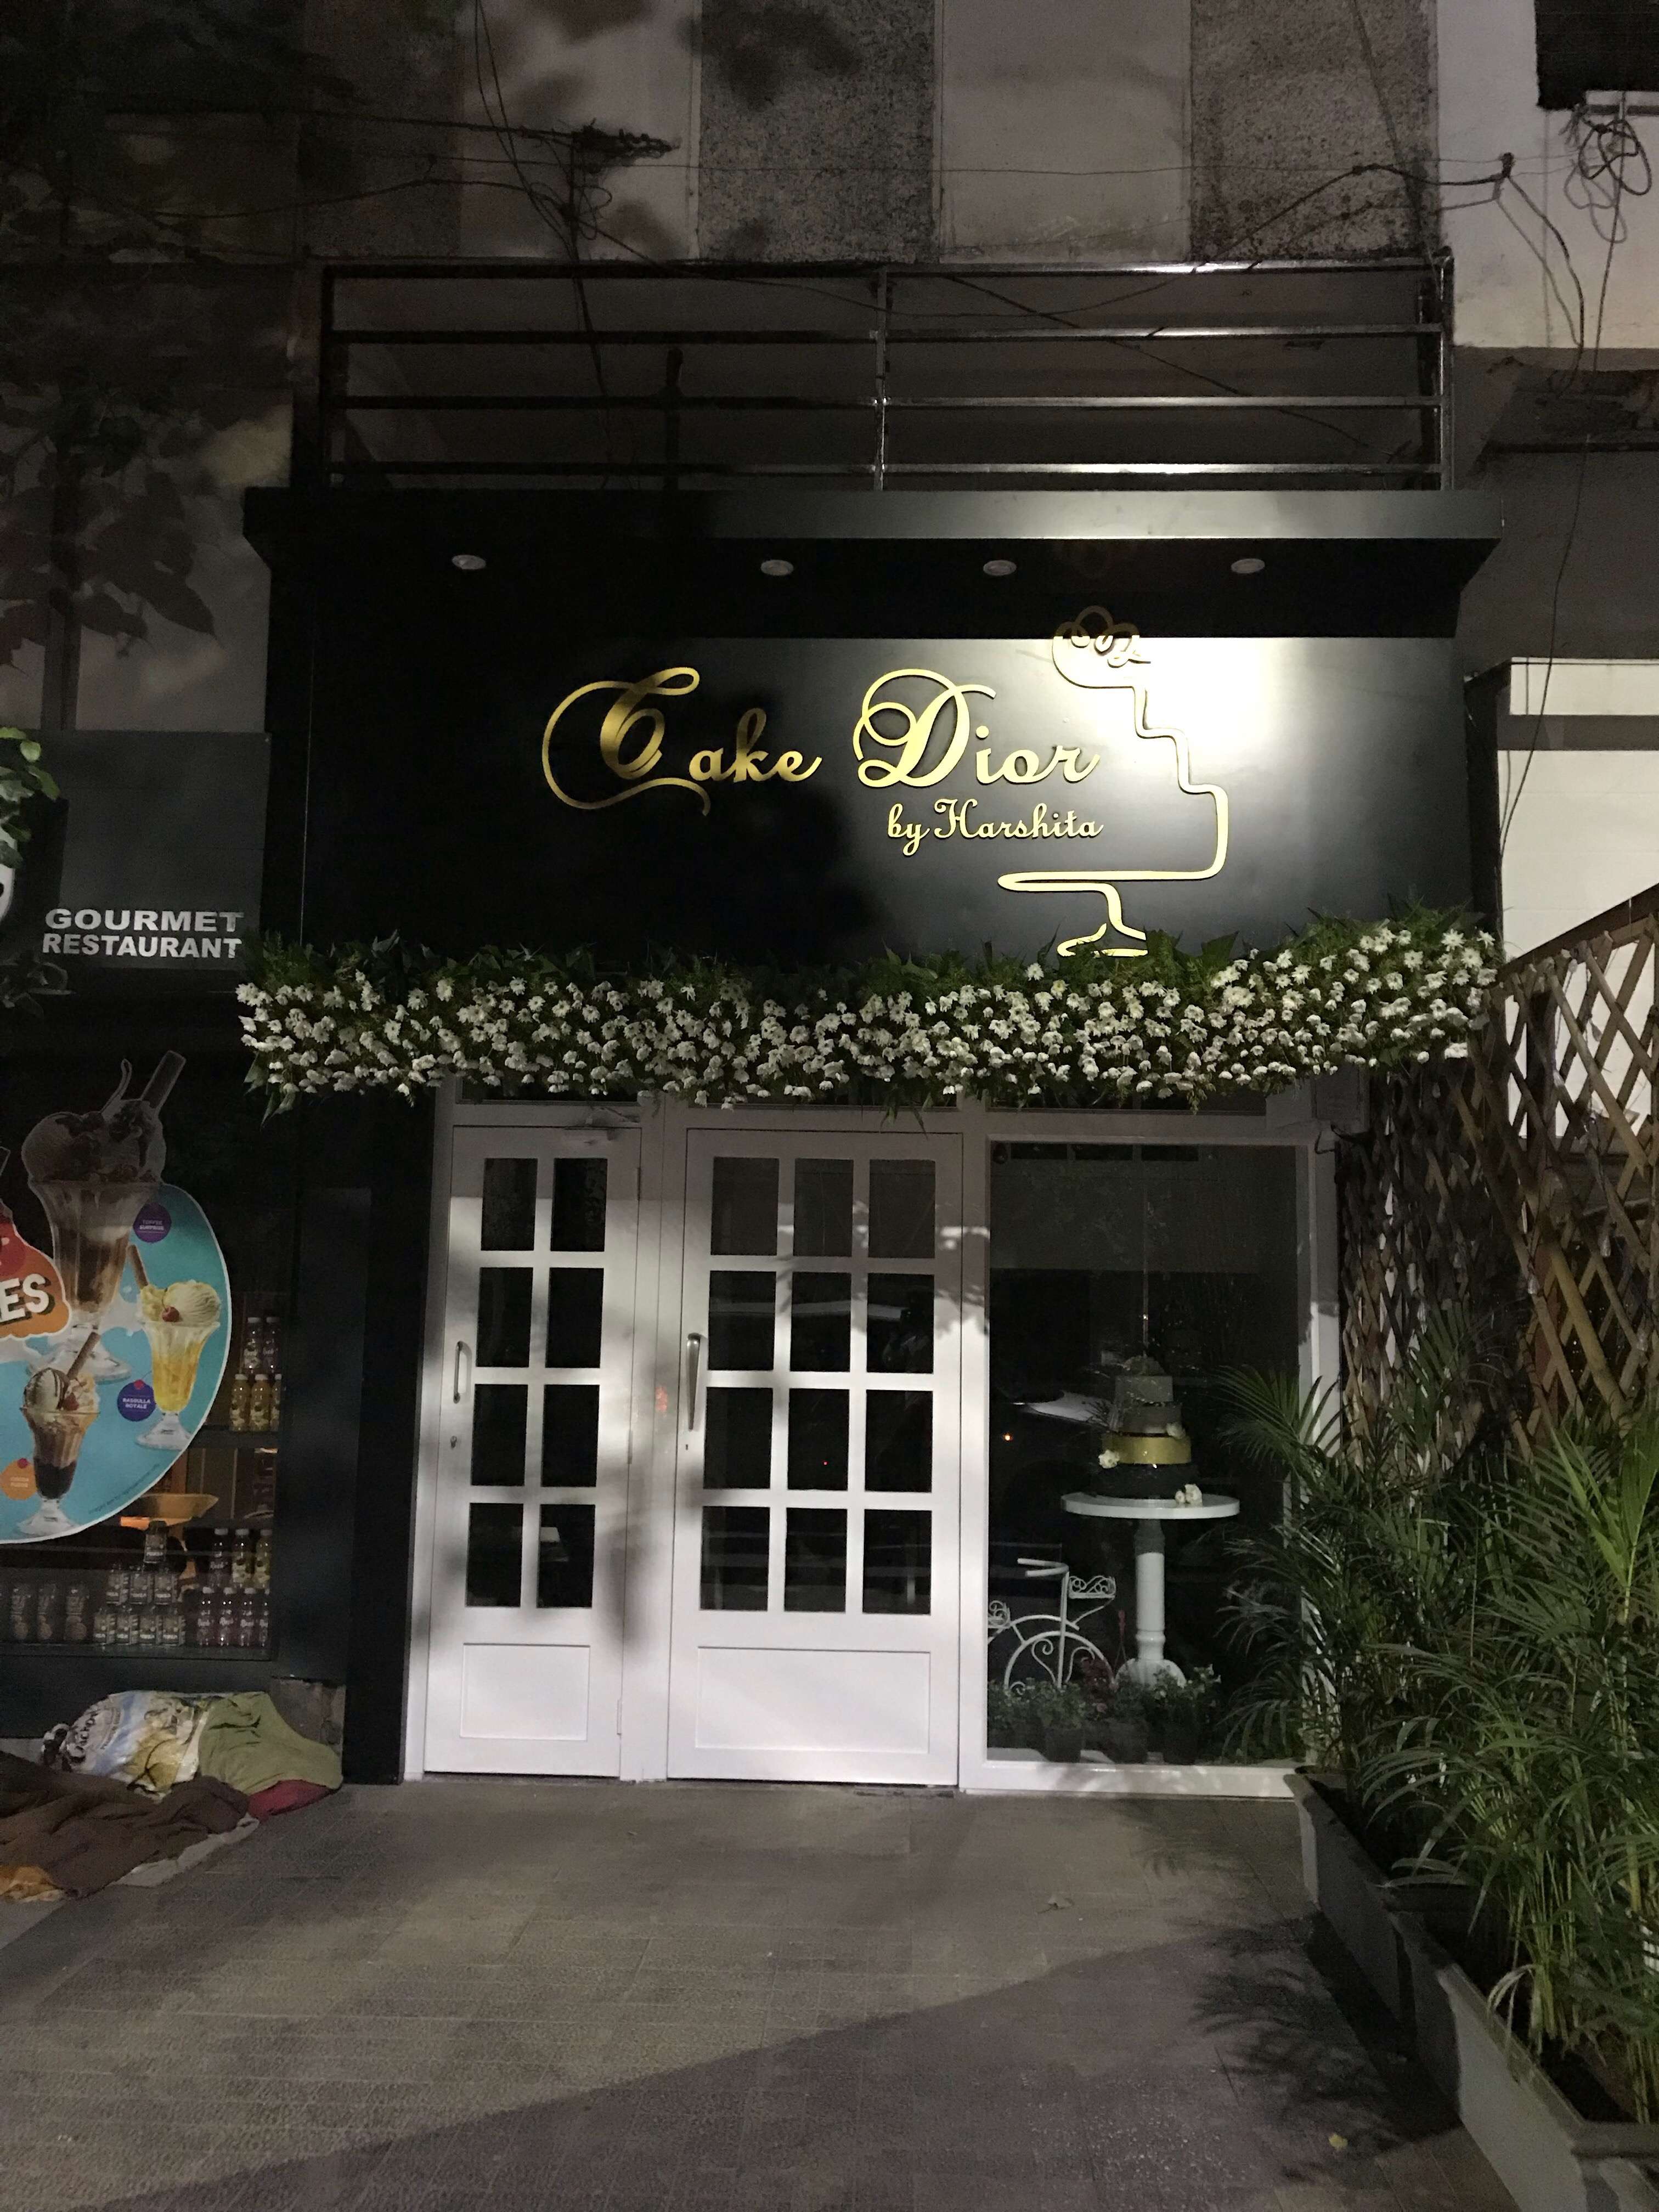 Cake Dior, Pune - Restaurant reviews